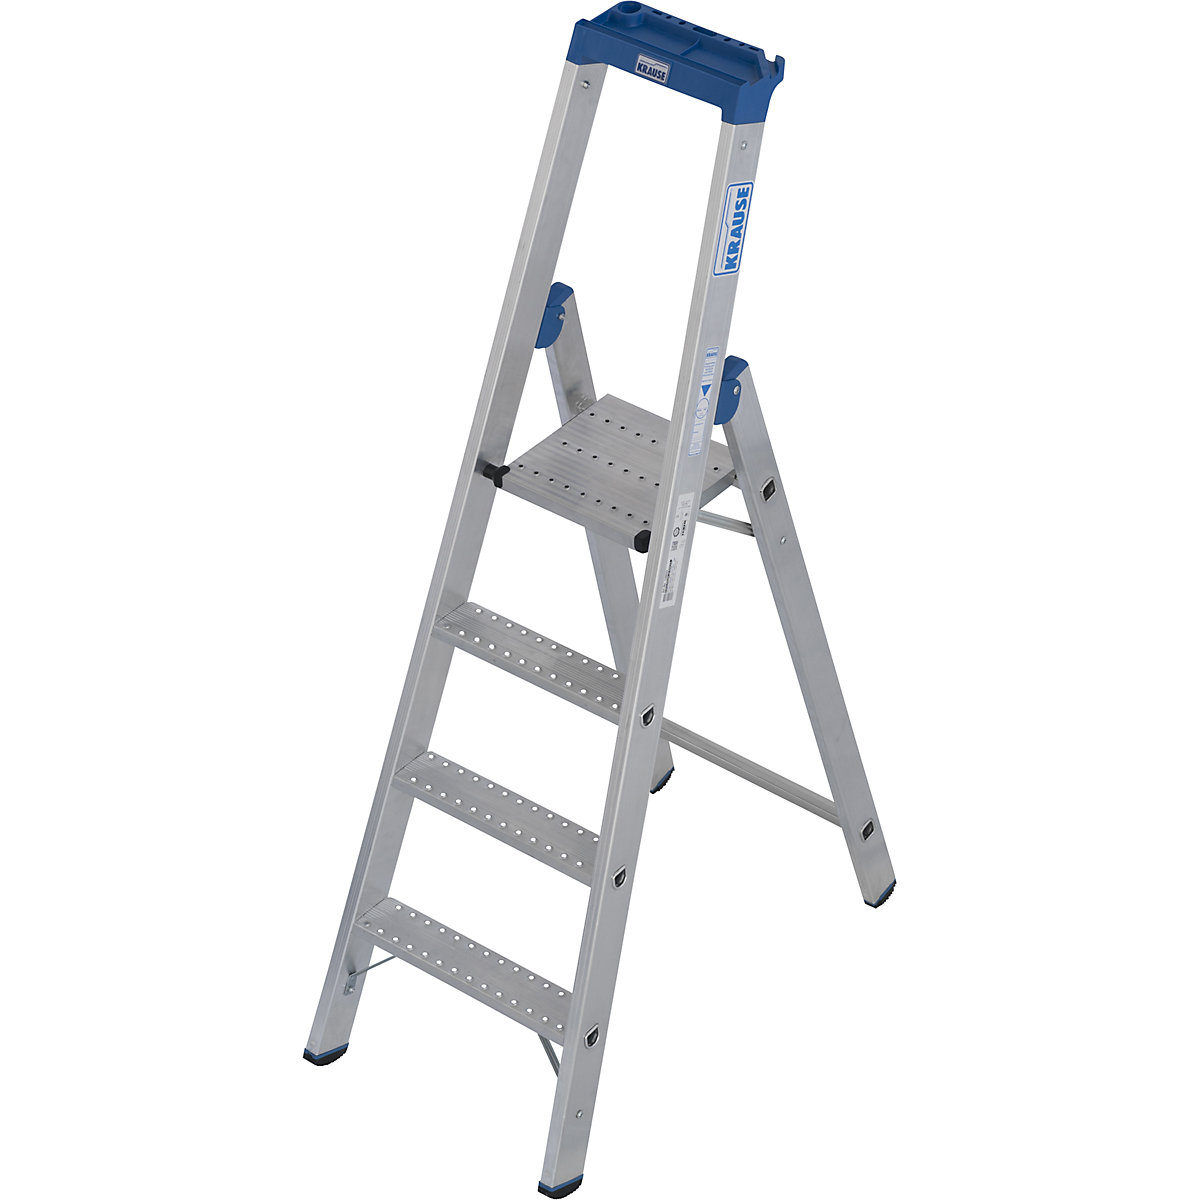 Hliníkový stojací rebrík so stupňami, s protišmykovou úpravou R13 – KRAUSE